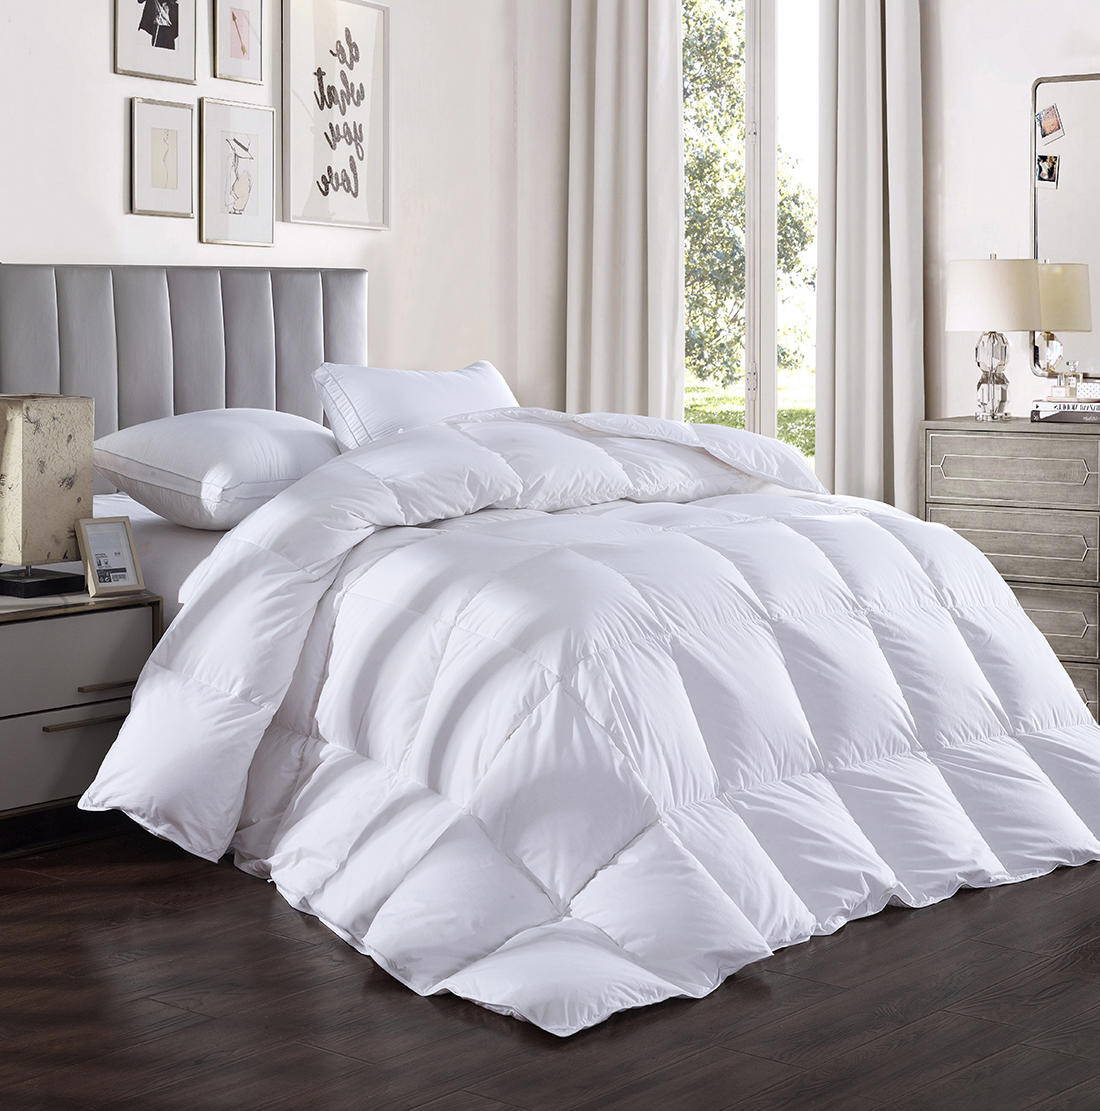 All Seasons Queen Duvet Insert Details about   drtoor Luxurious Down Comforter 100% Hypoallerg 